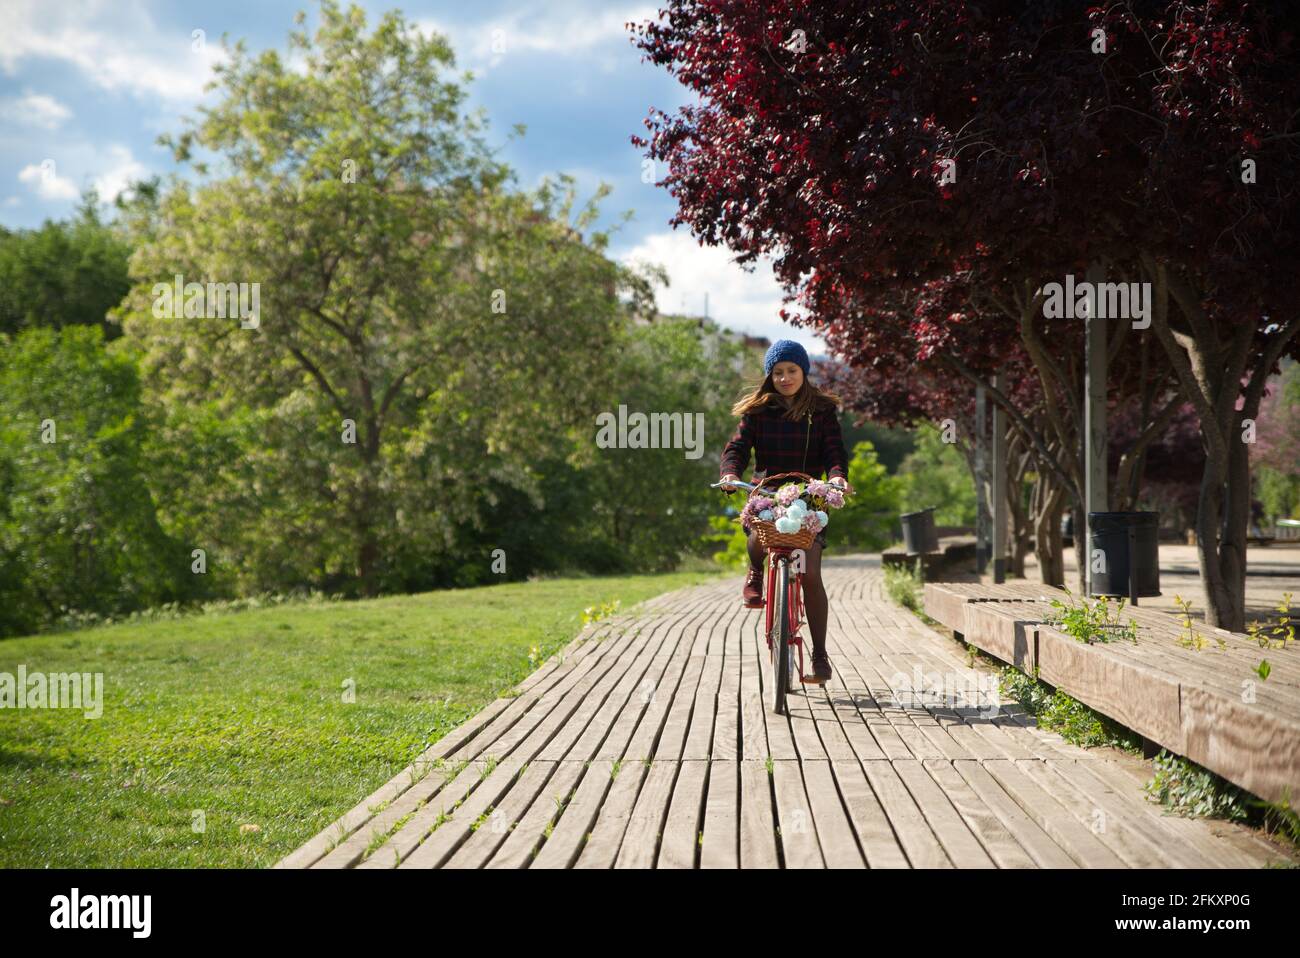 Frau auf einem roten Fahrrad mit Korb mit bunten Blumen. Stockfoto